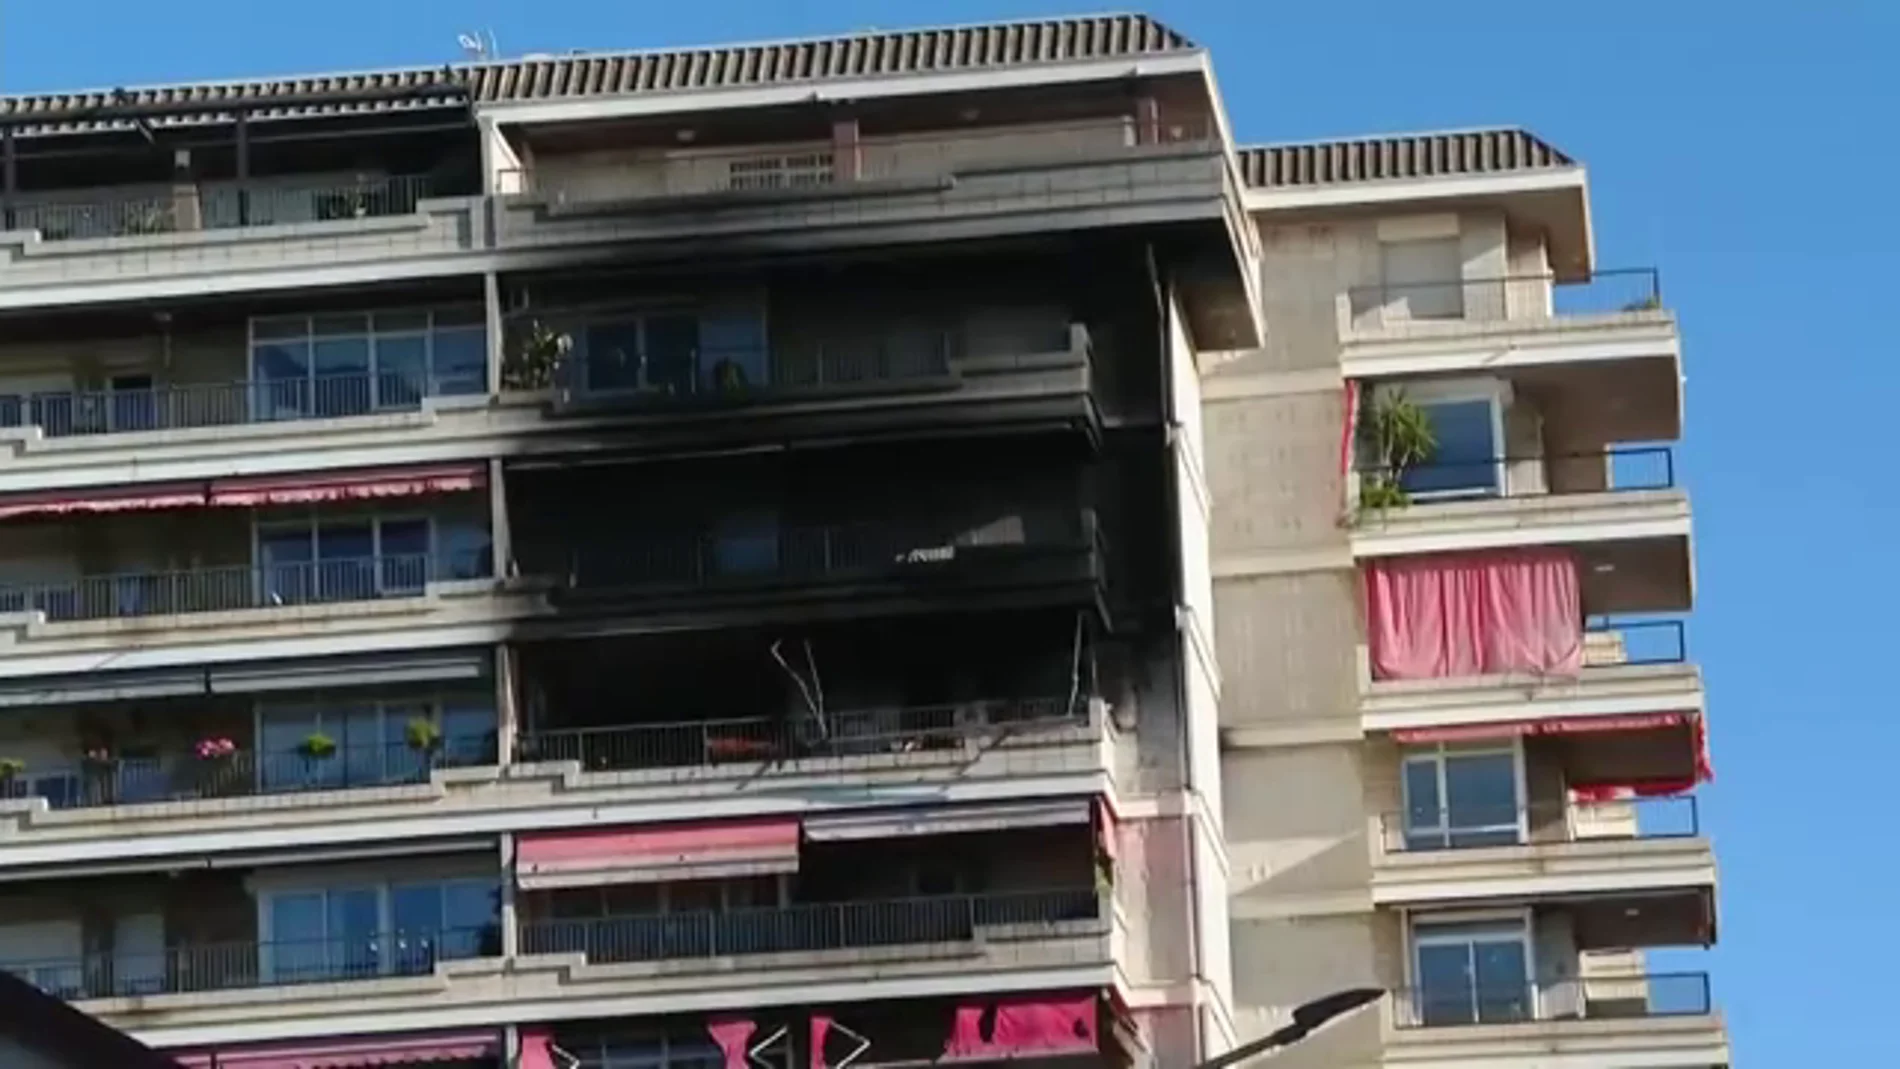 Muere un matrimonio de ancianos en el incendio de su piso en Vilassar de Mar, en Barcelona